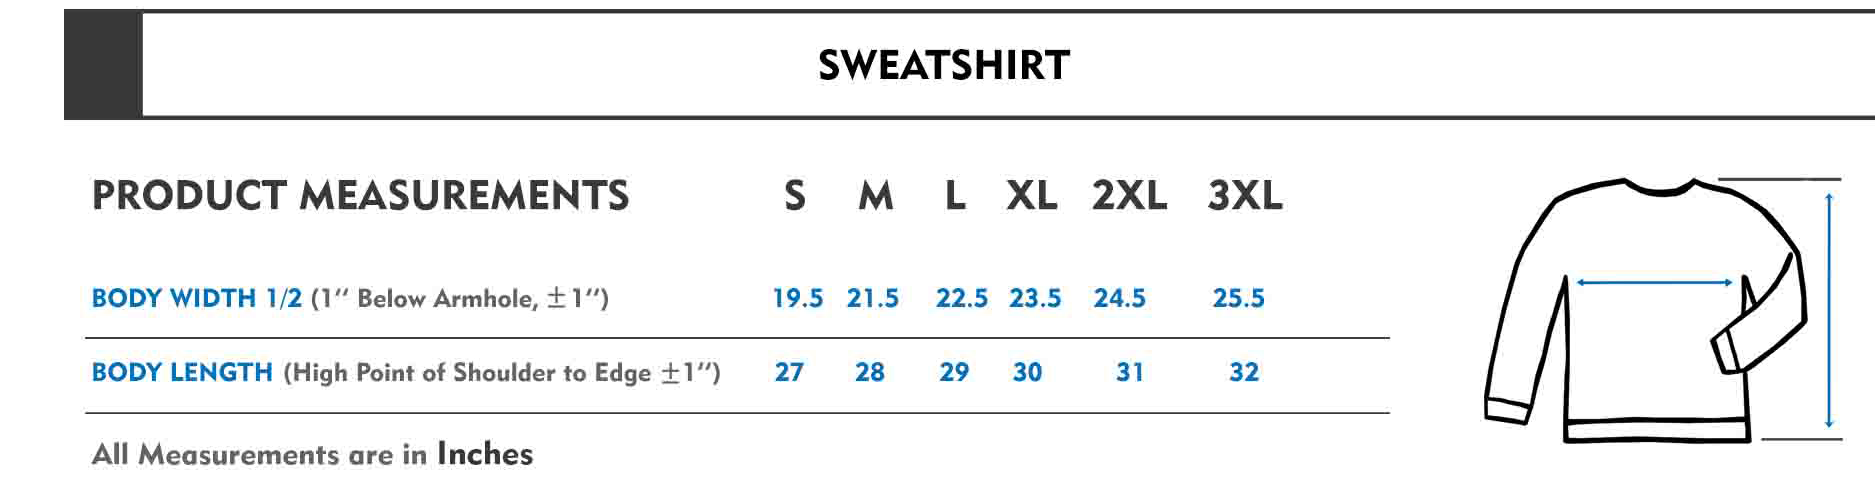 sweatshirt adult size chart